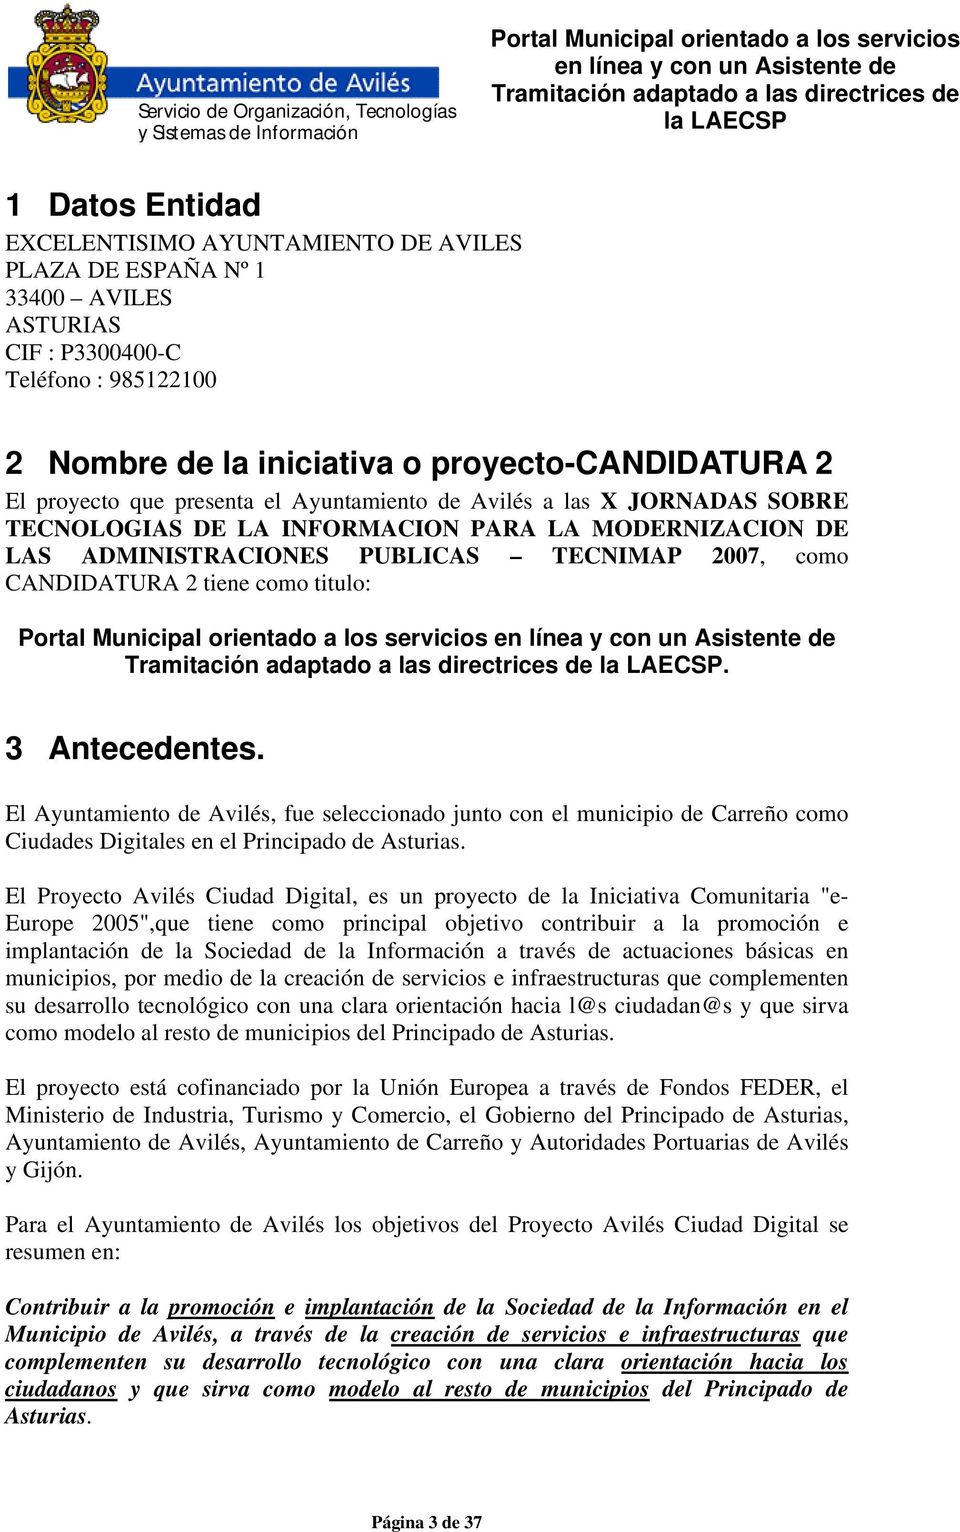 3 Antecedentes. El Ayuntamiento de Avilés, fue seleccionado junto con el municipio de Carreño como Ciudades Digitales en el Principado de Asturias.